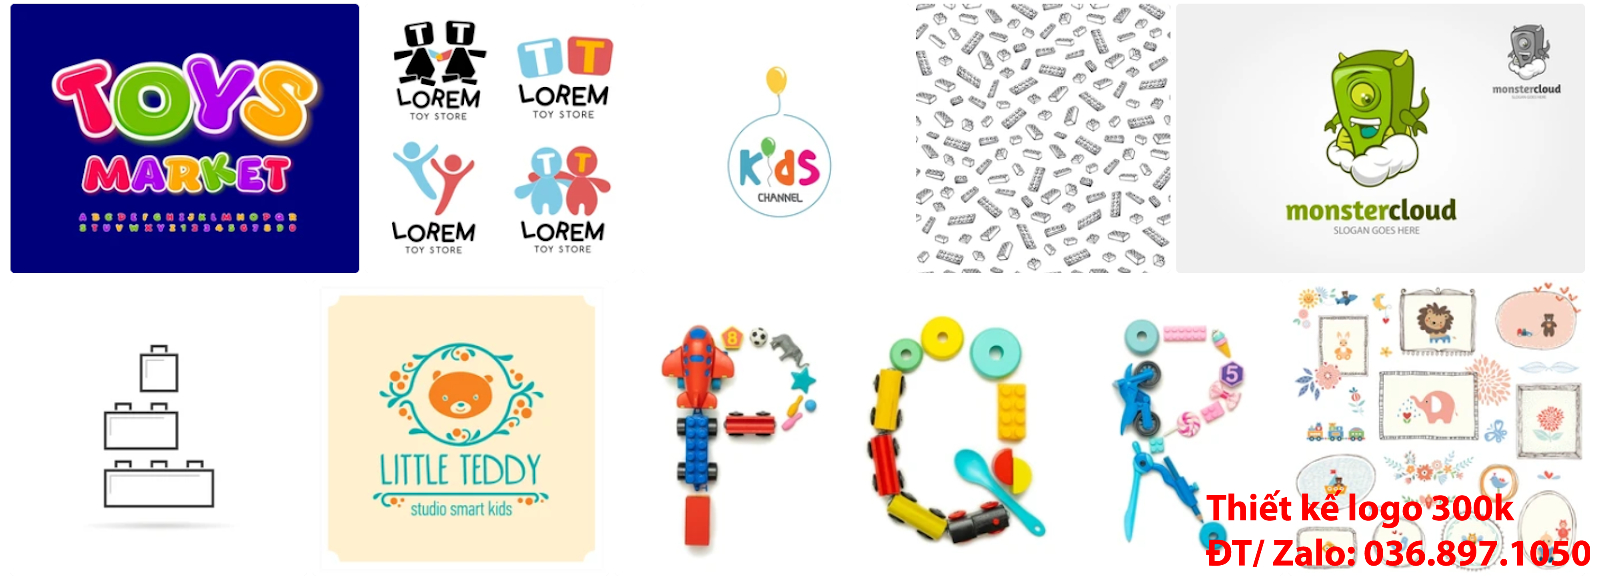 Công ty cung cấp dịch vụ làm logo đồ chơi trẻ em chuyên nghiệp giá rẻ 300k -500k tại Hà Nội